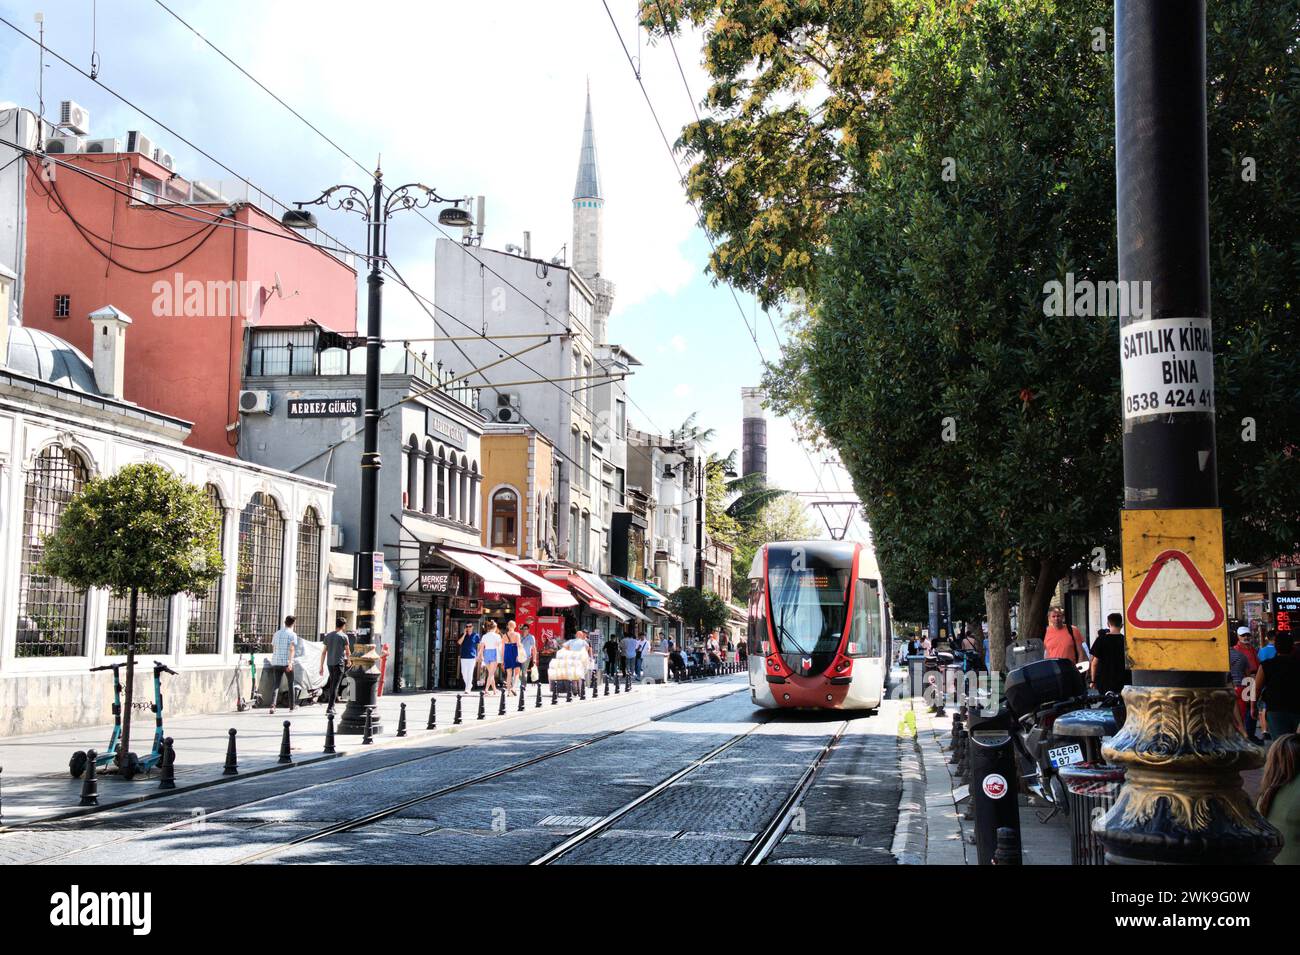 Centro storico di Istanbul, architettura antica turca, strada pedonale, strada acciottolata Foto Stock